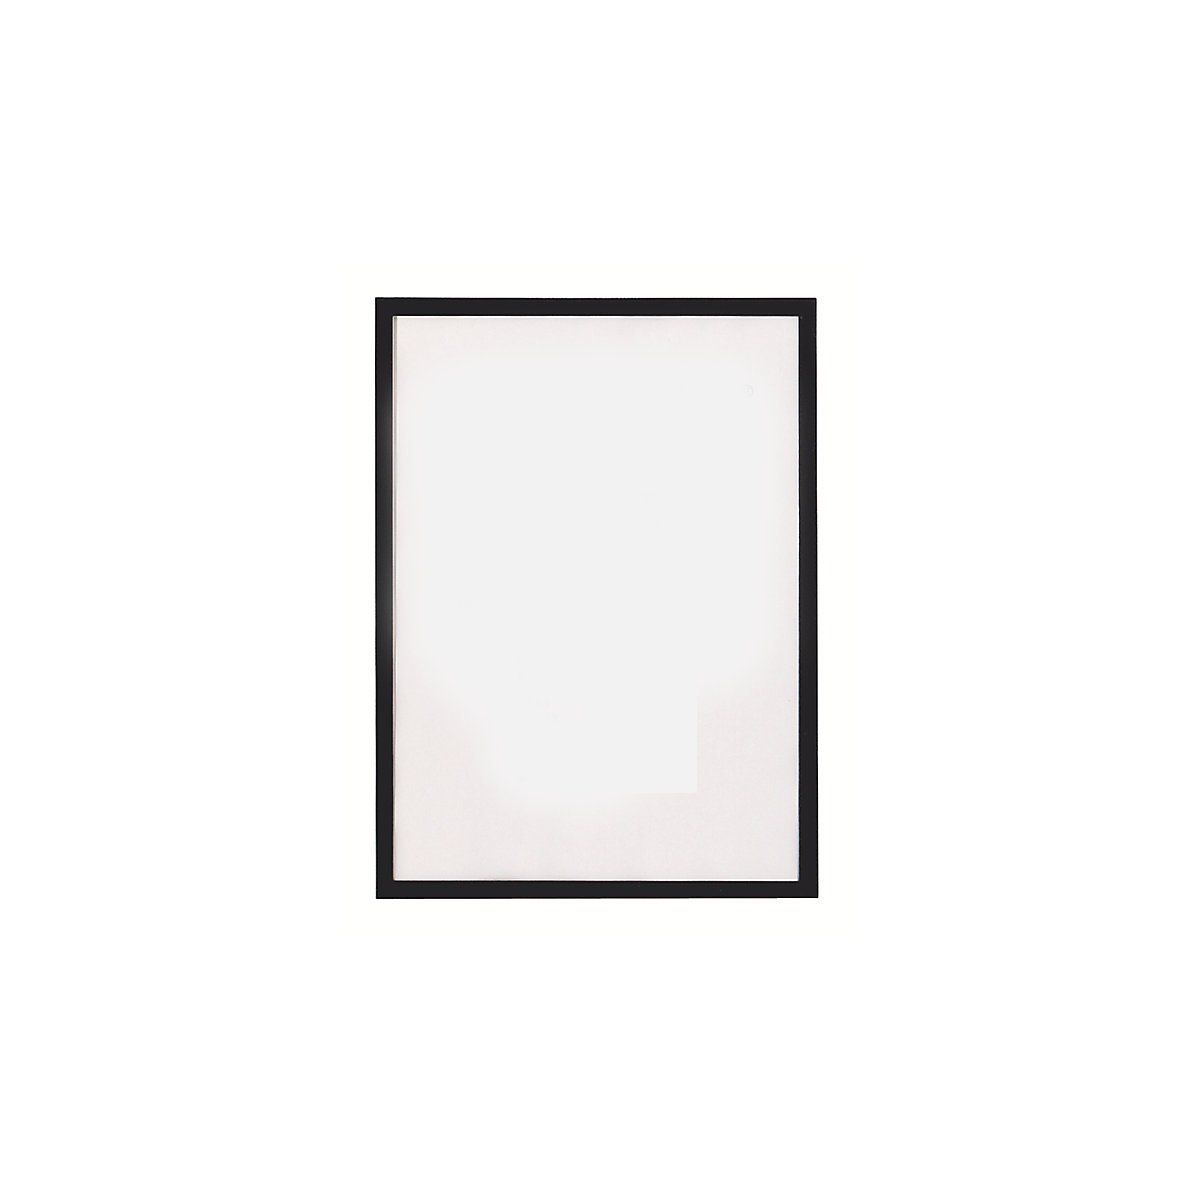 Pochettes magnetofix – magnetoplan, format A3, lot de 5, cadre noir